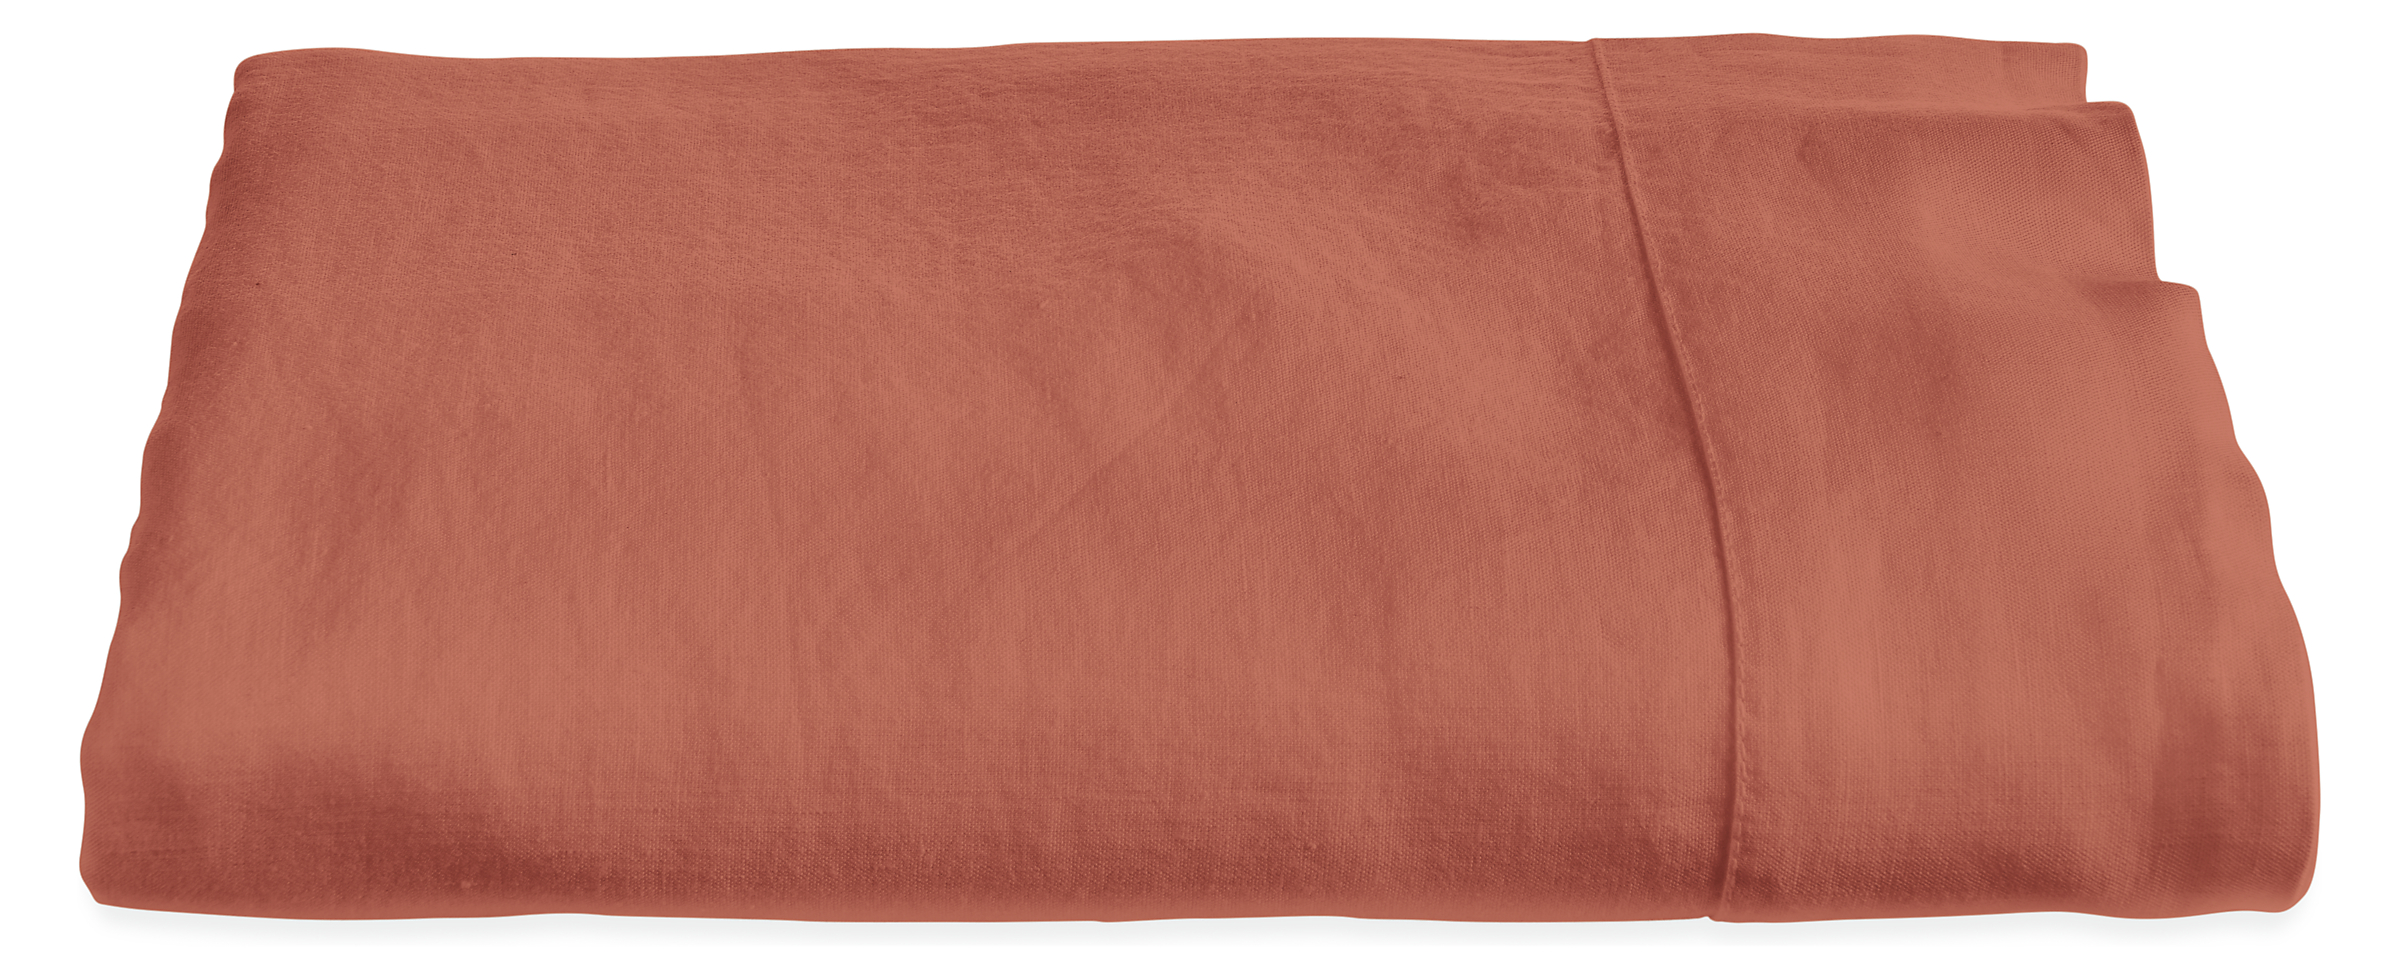 Relaxed Linen Queen Flat Sheet in Brick